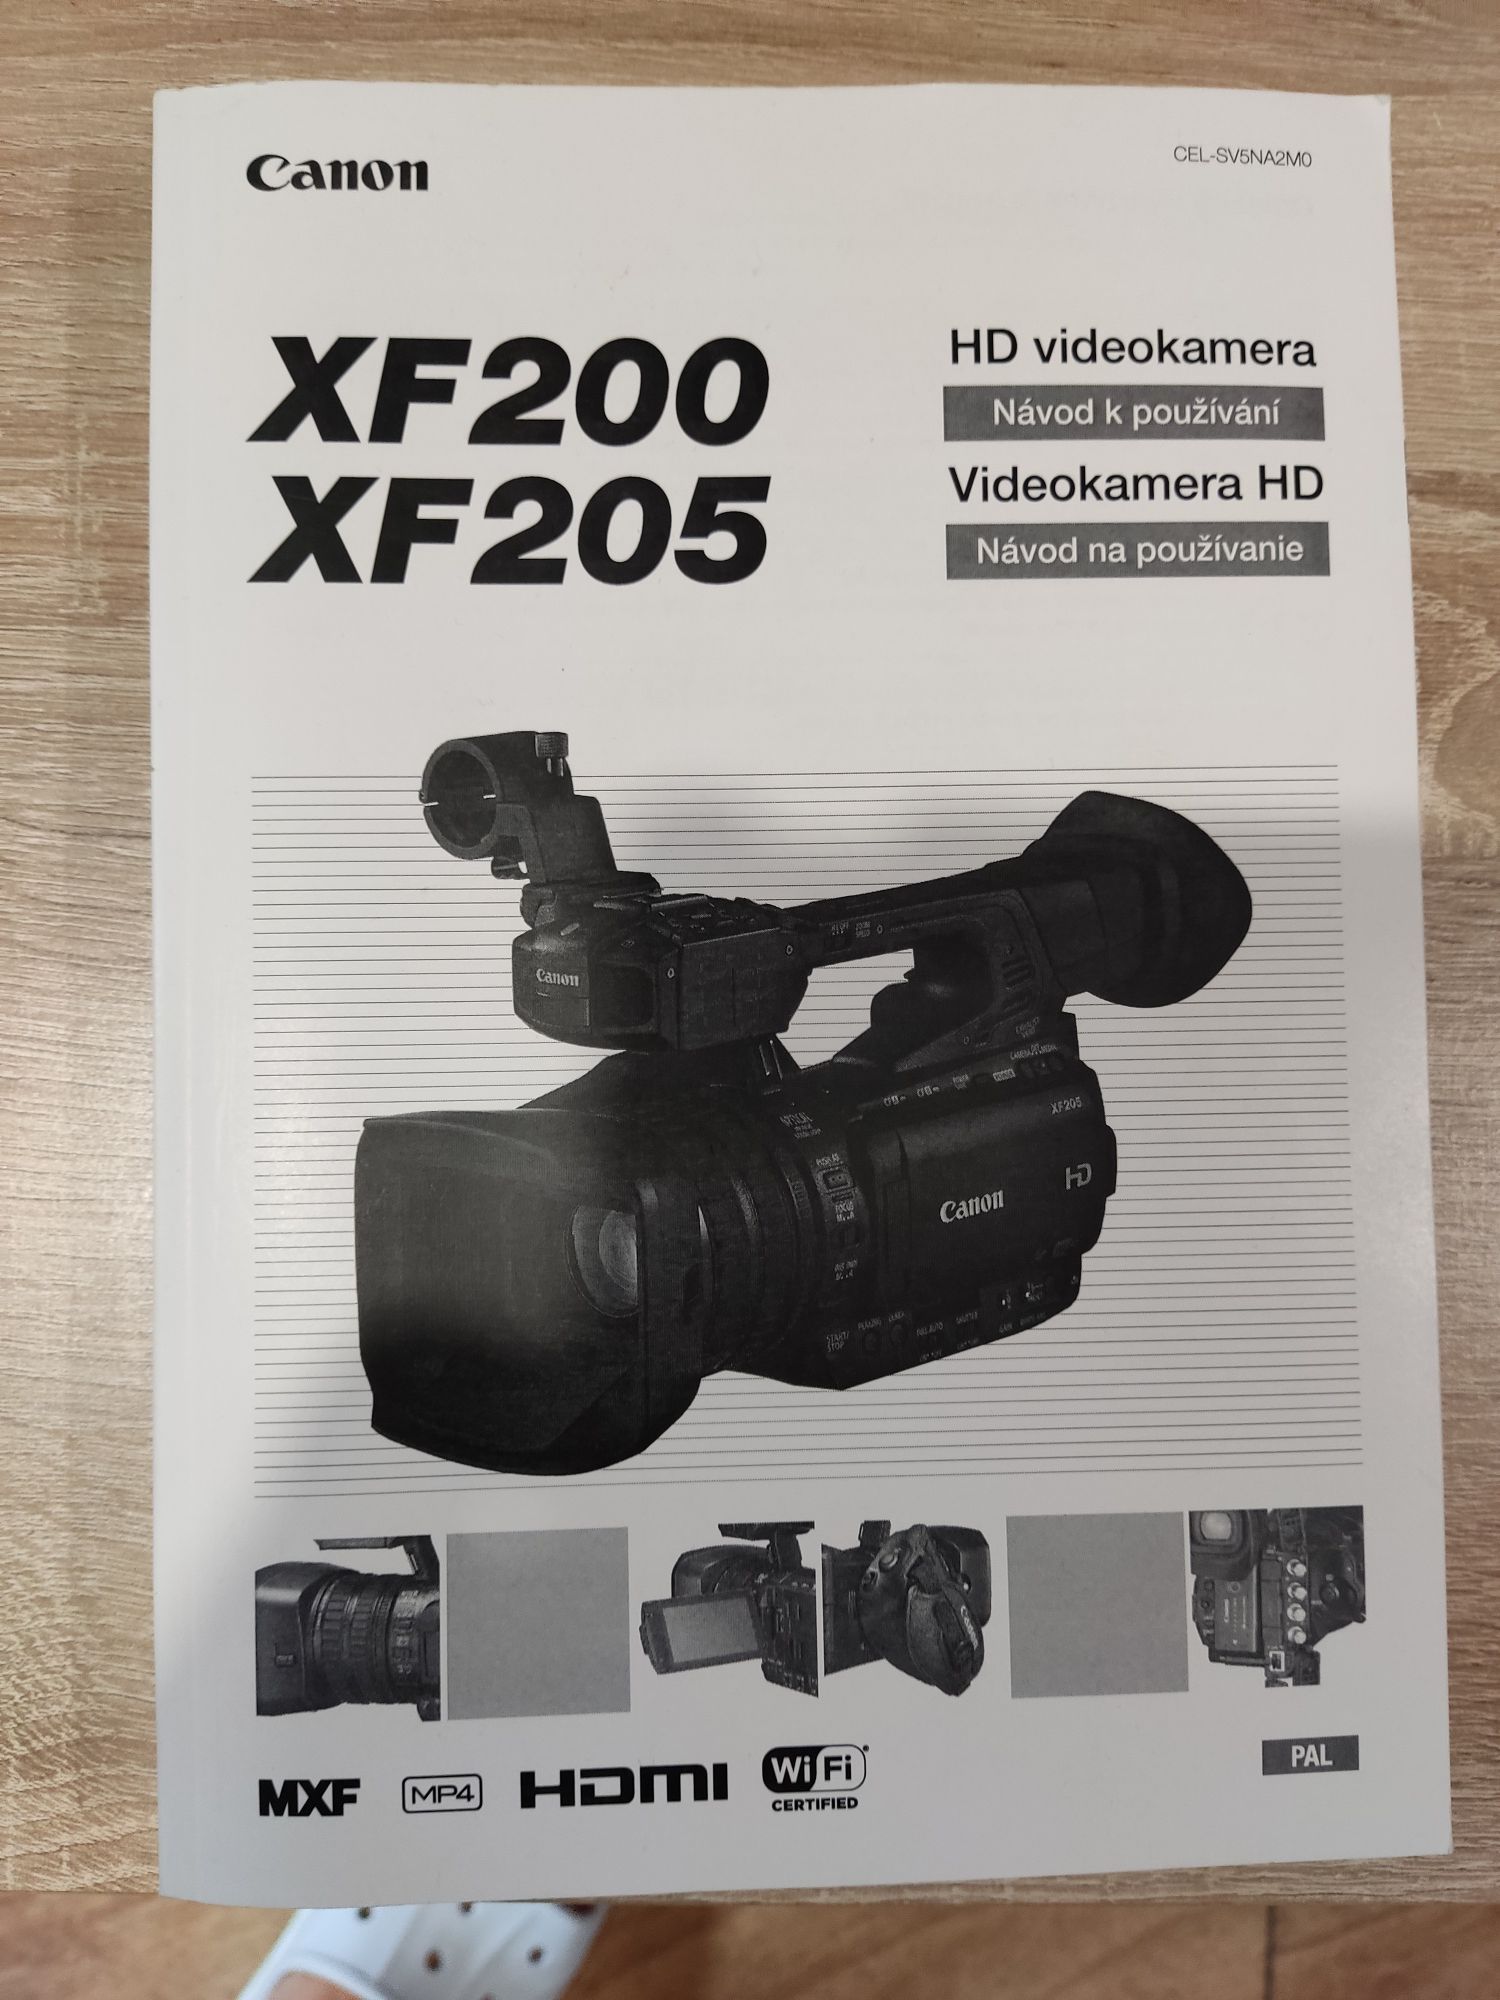 Instrukcja obsługi kamery Canon XF200 XF205 po czesku i słowacku